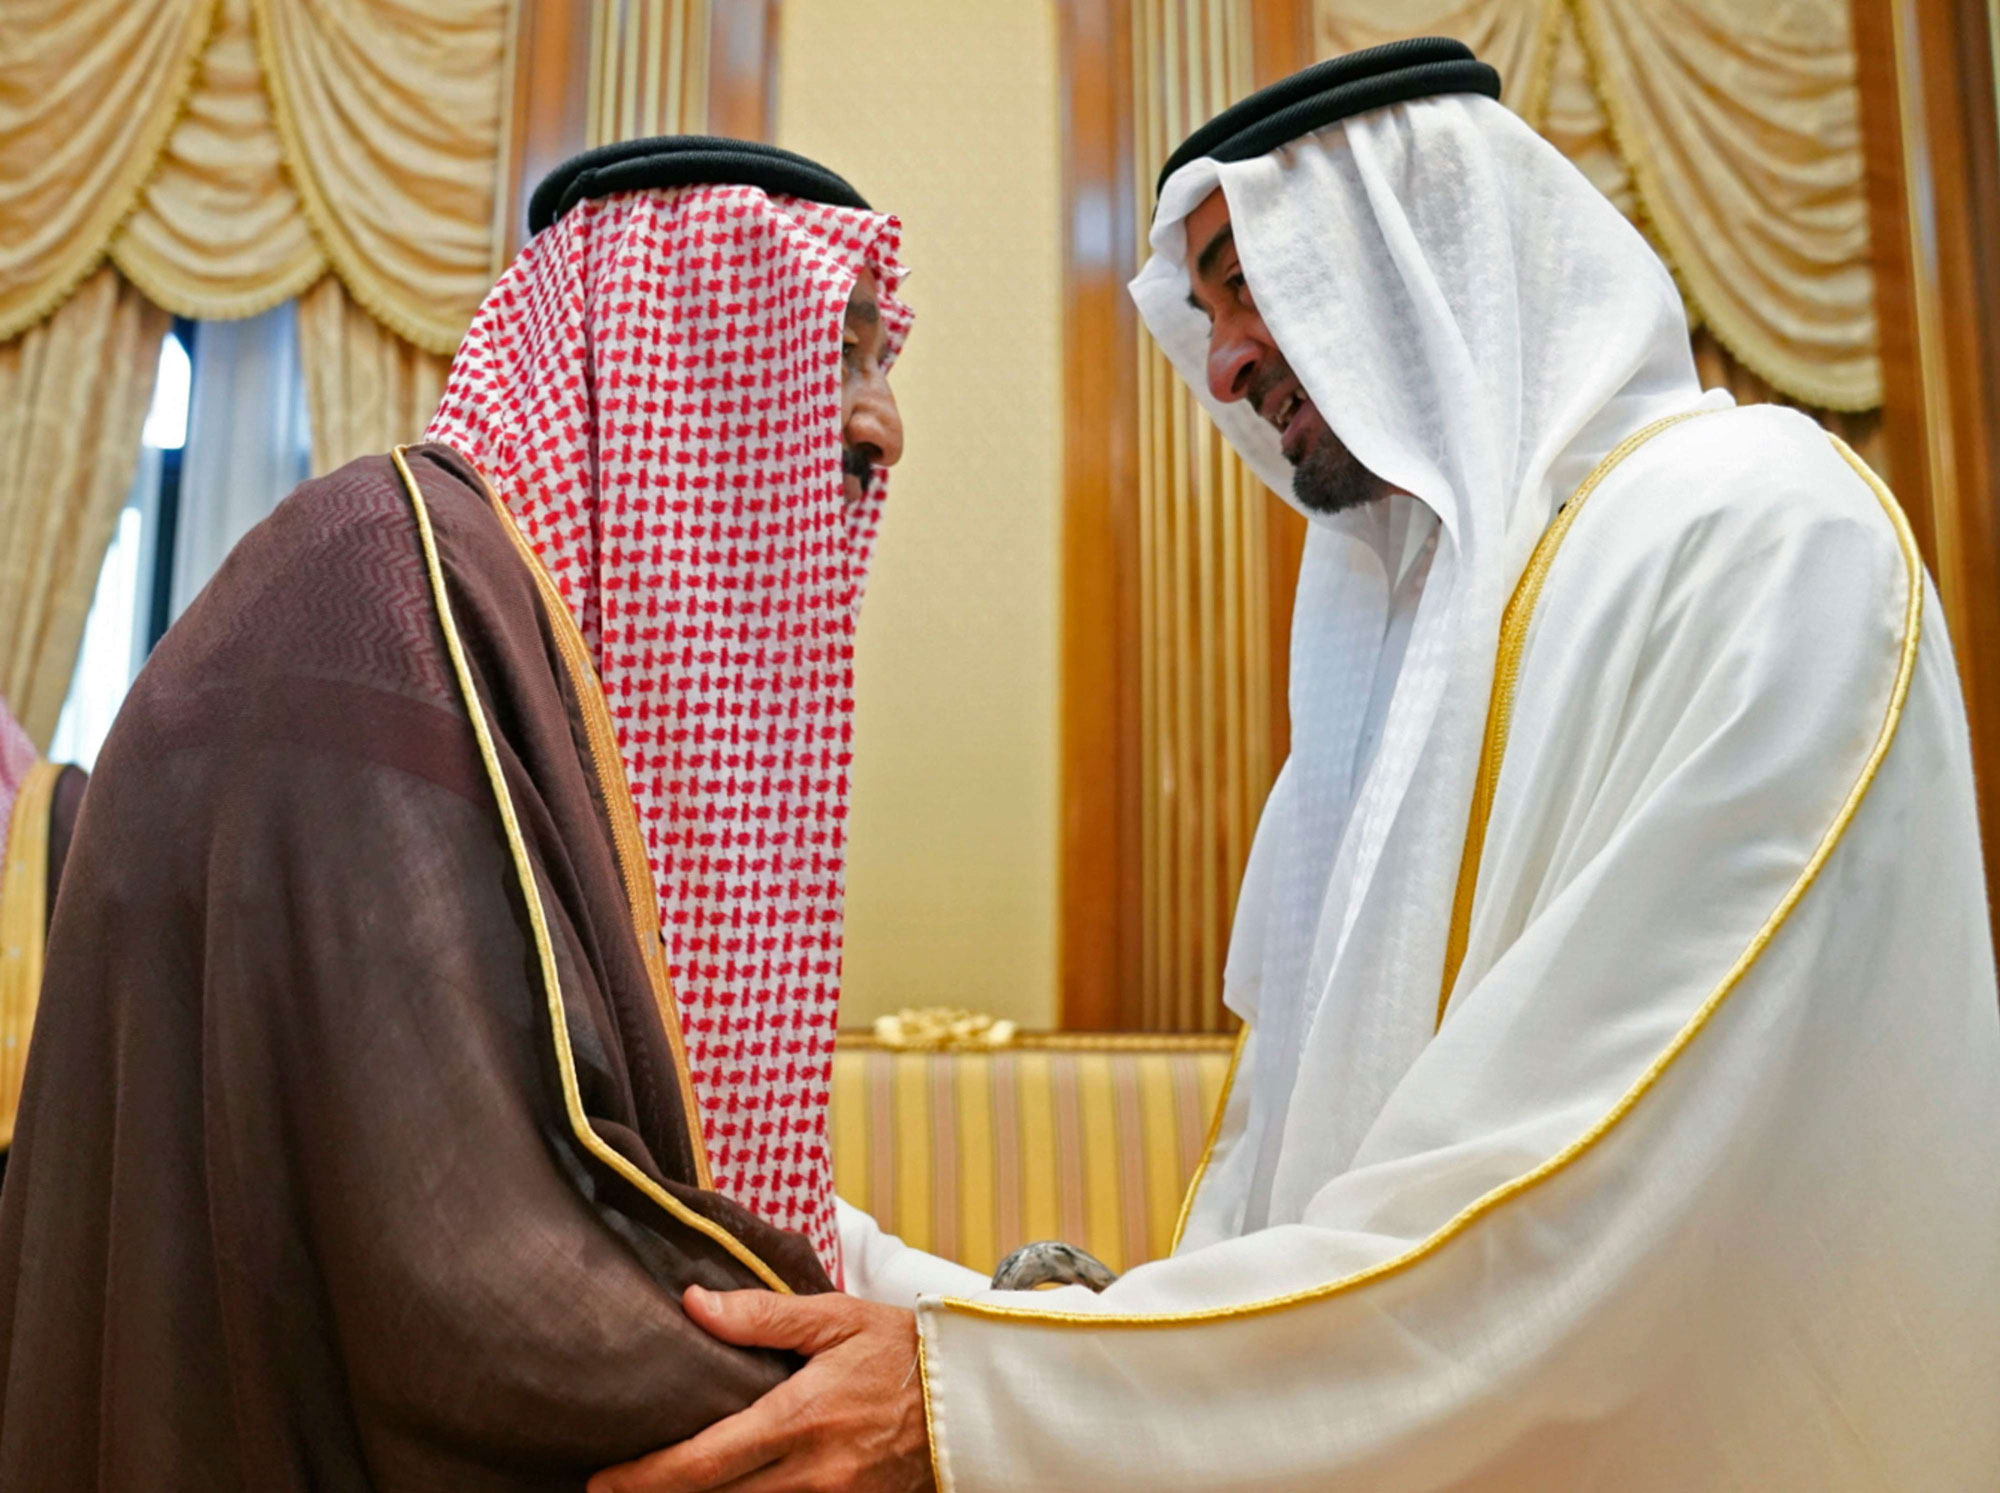 العاهل السعودي الملك سلمان بن عبدالعزيز استقبل قبل أيام ولي عهد أبوظبي الشيخ محمد بن زايد آل نهيان